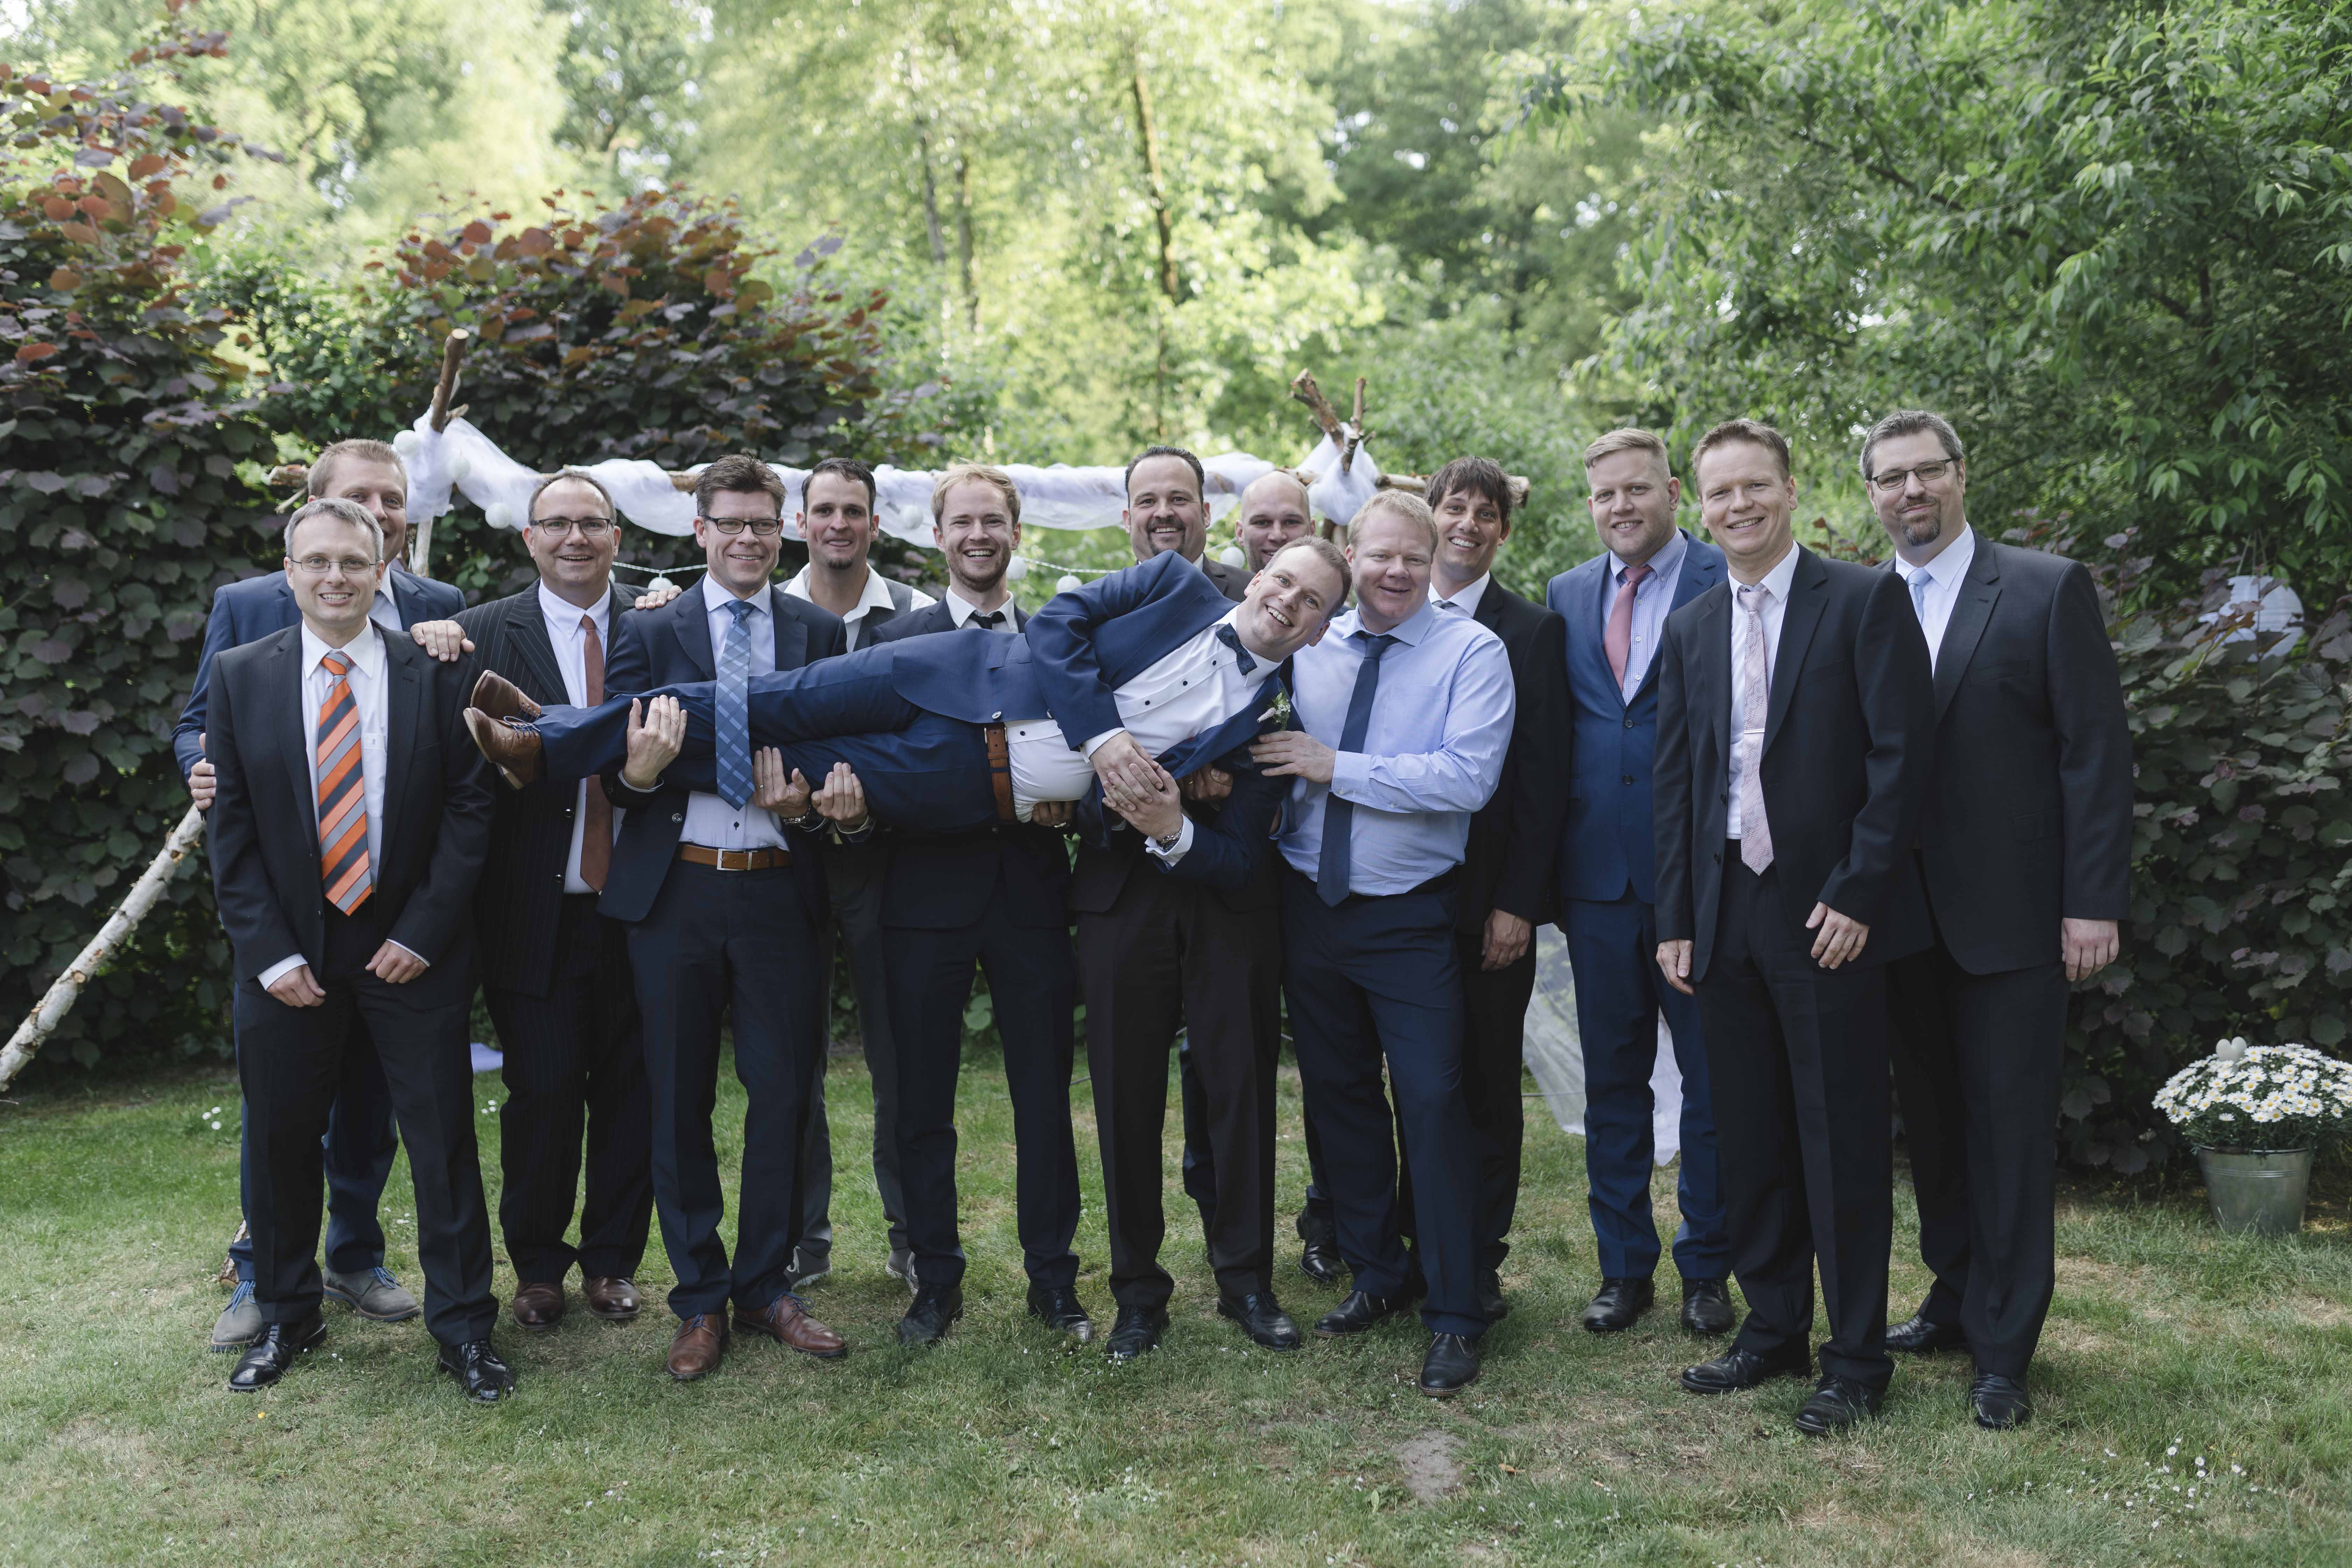 Gruppenfotos am Hochzeitstag - die Männerrunde